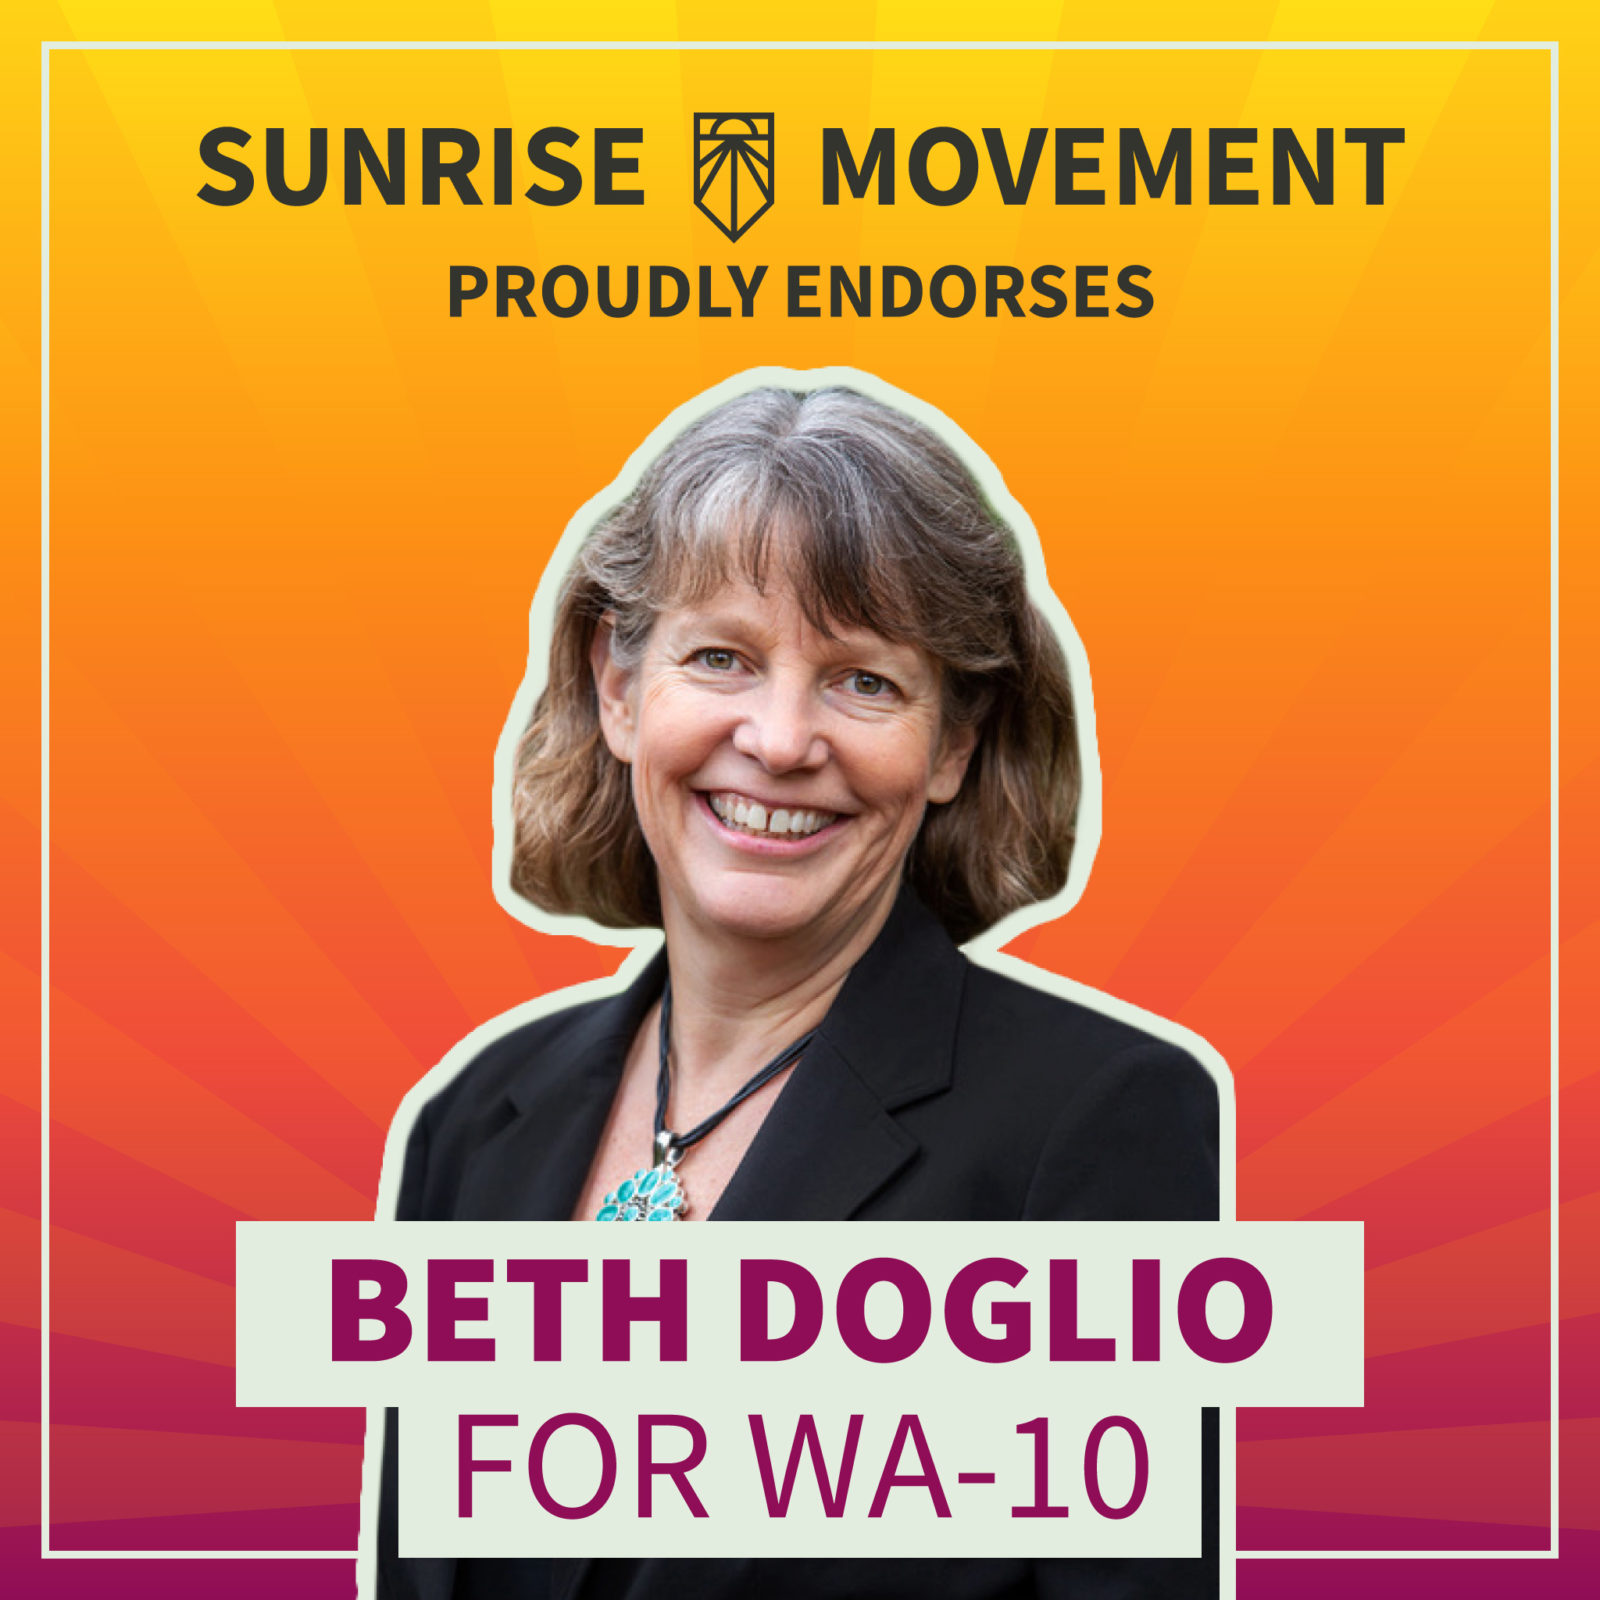 Une photo de Beth Doglio avec du texte : Sunrise Movement soutient fièrement Beth Doglio pour WA-10.